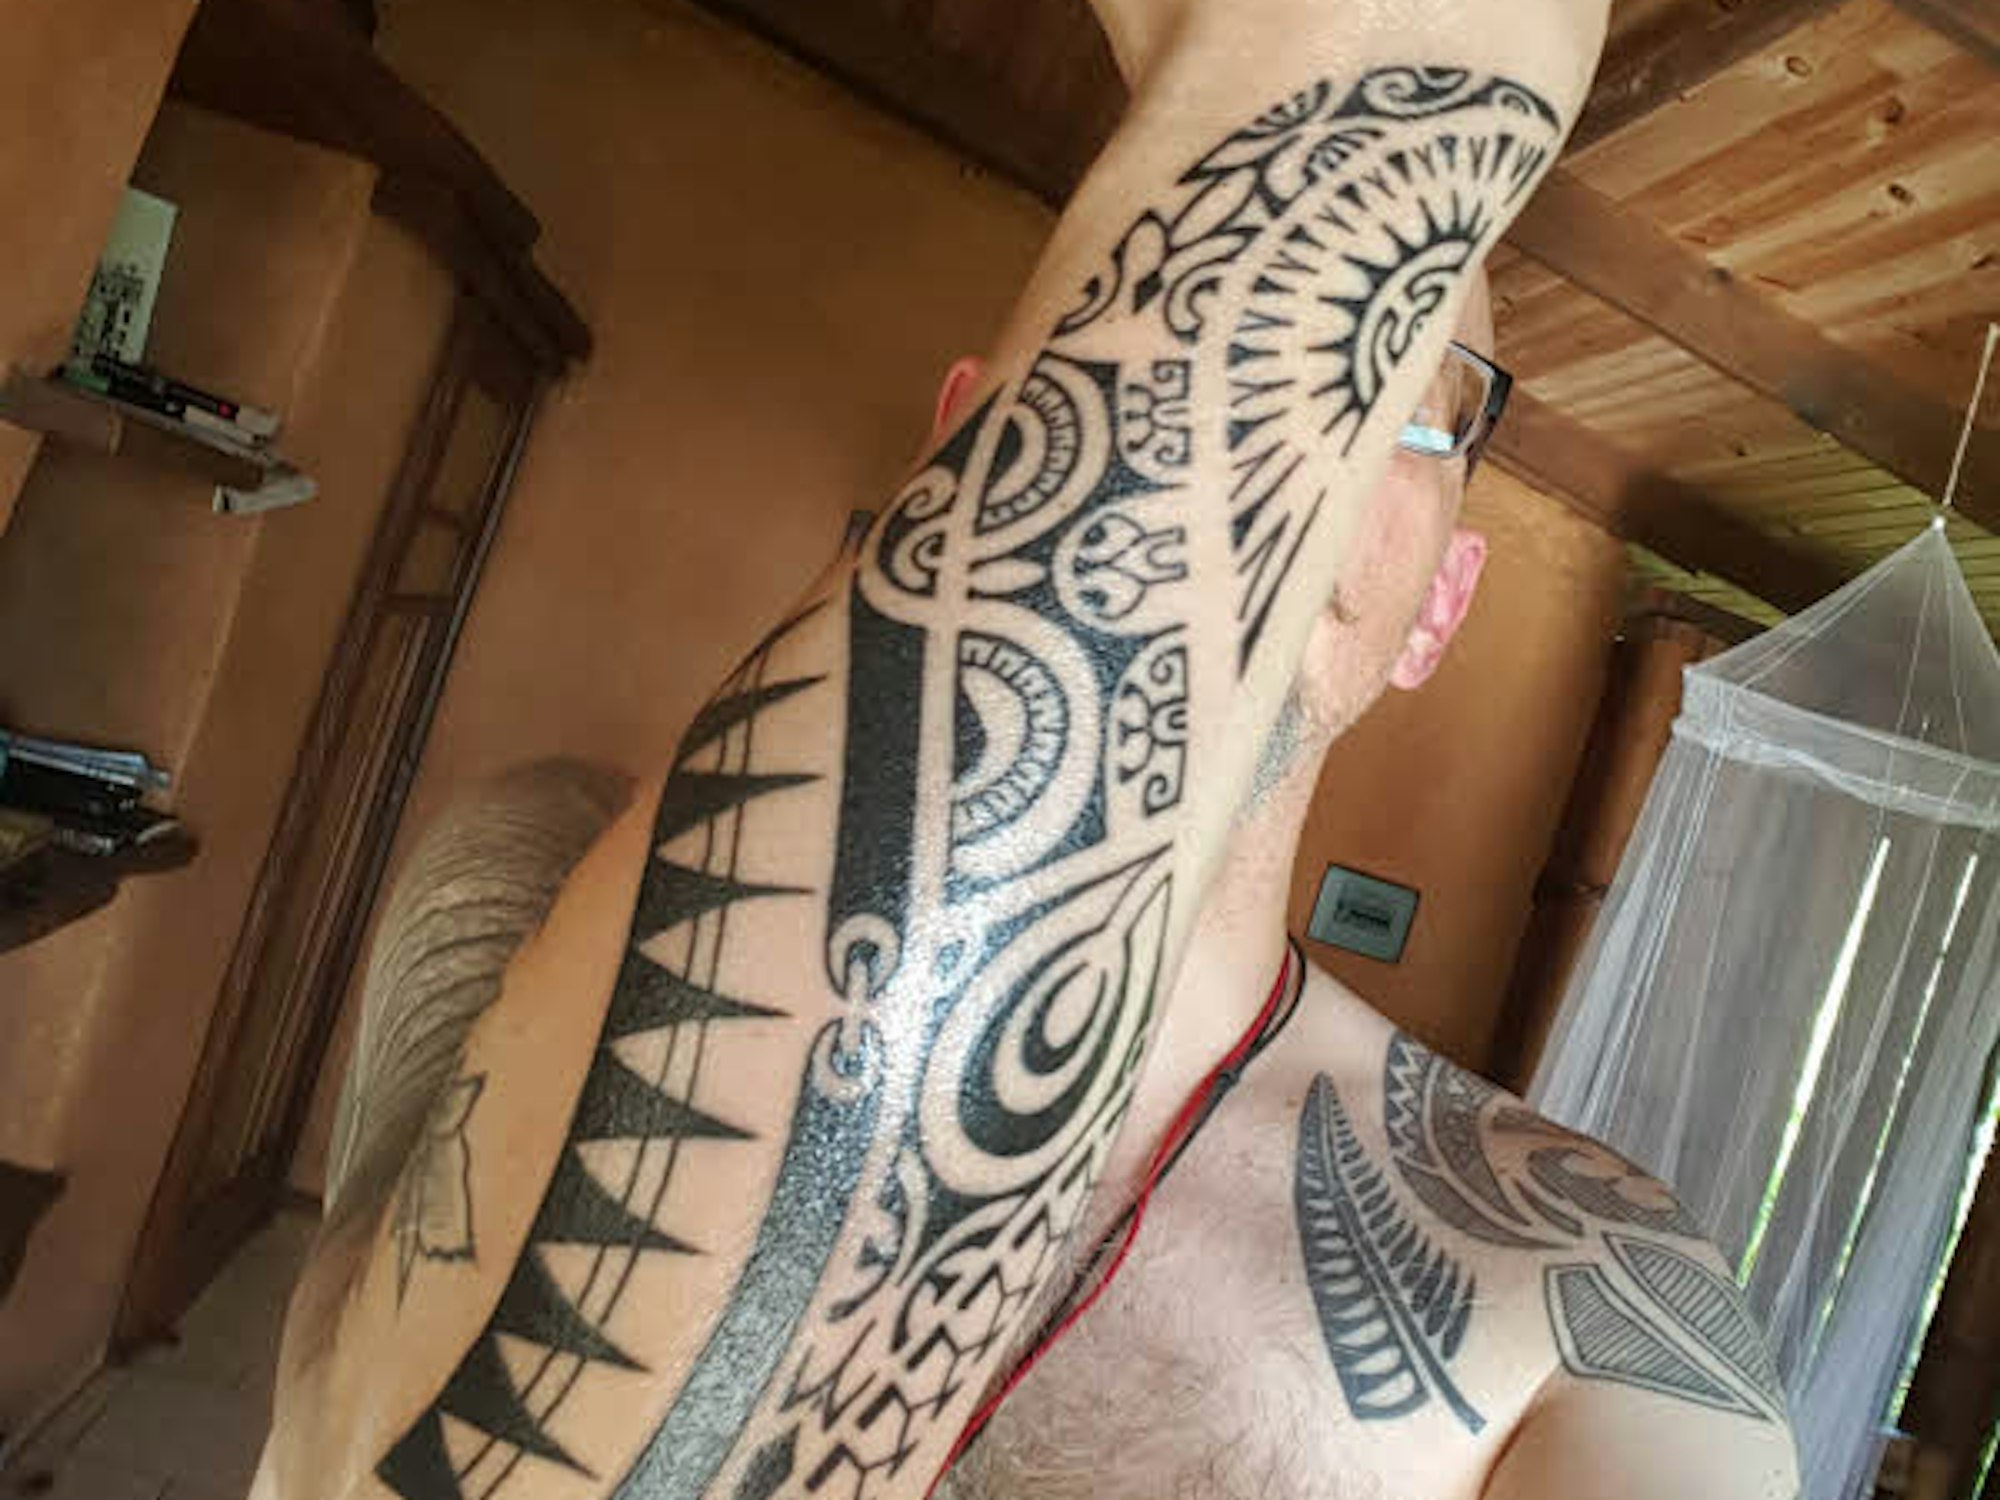 Aus dem Urlaub in Polynesien hat Müller-Grote die Unterarm-Tattoos mitgebracht. Die grafischen Elemente sind beheimatet in der Lapita-Kultur, die sich von Asien aus in der Südsee verbreitet hat.